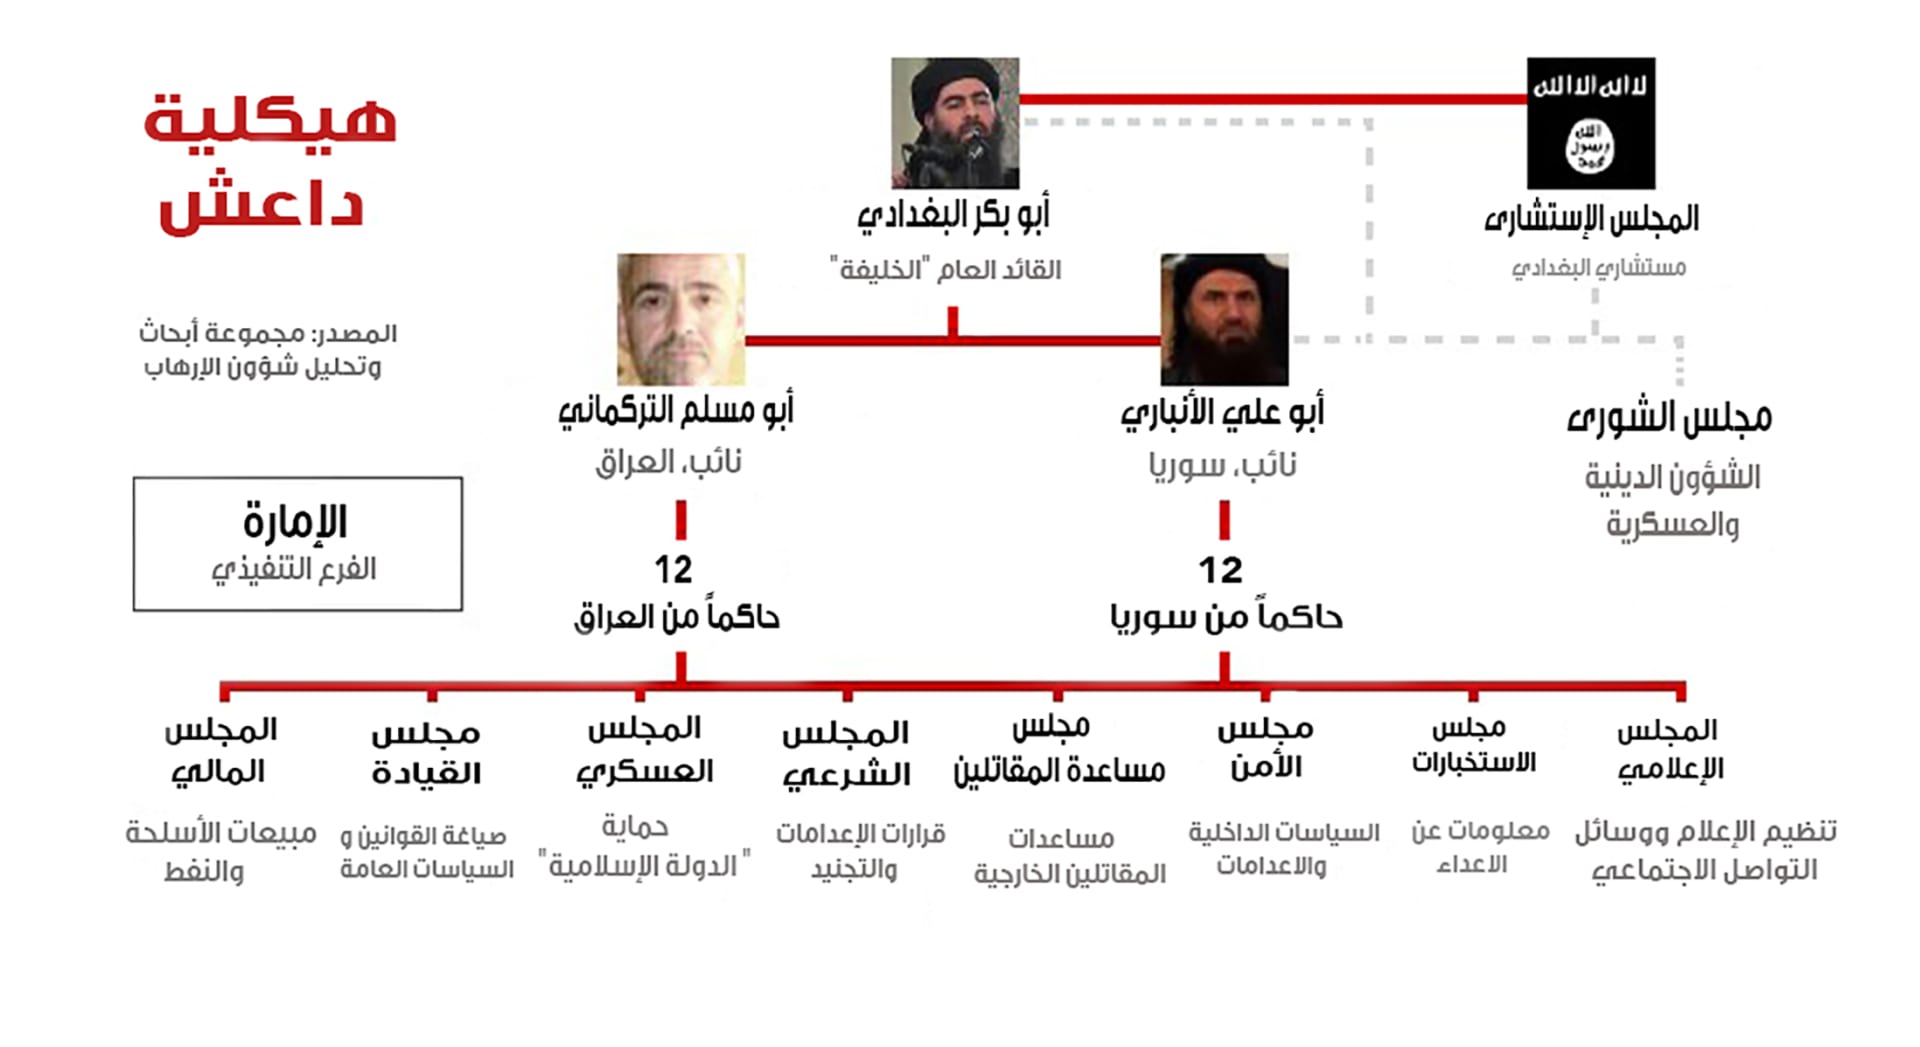 هيكلية داعش.. كيف تدير "دولتها الإسلامية" من ريع النفط إلى قطع الرؤوس؟